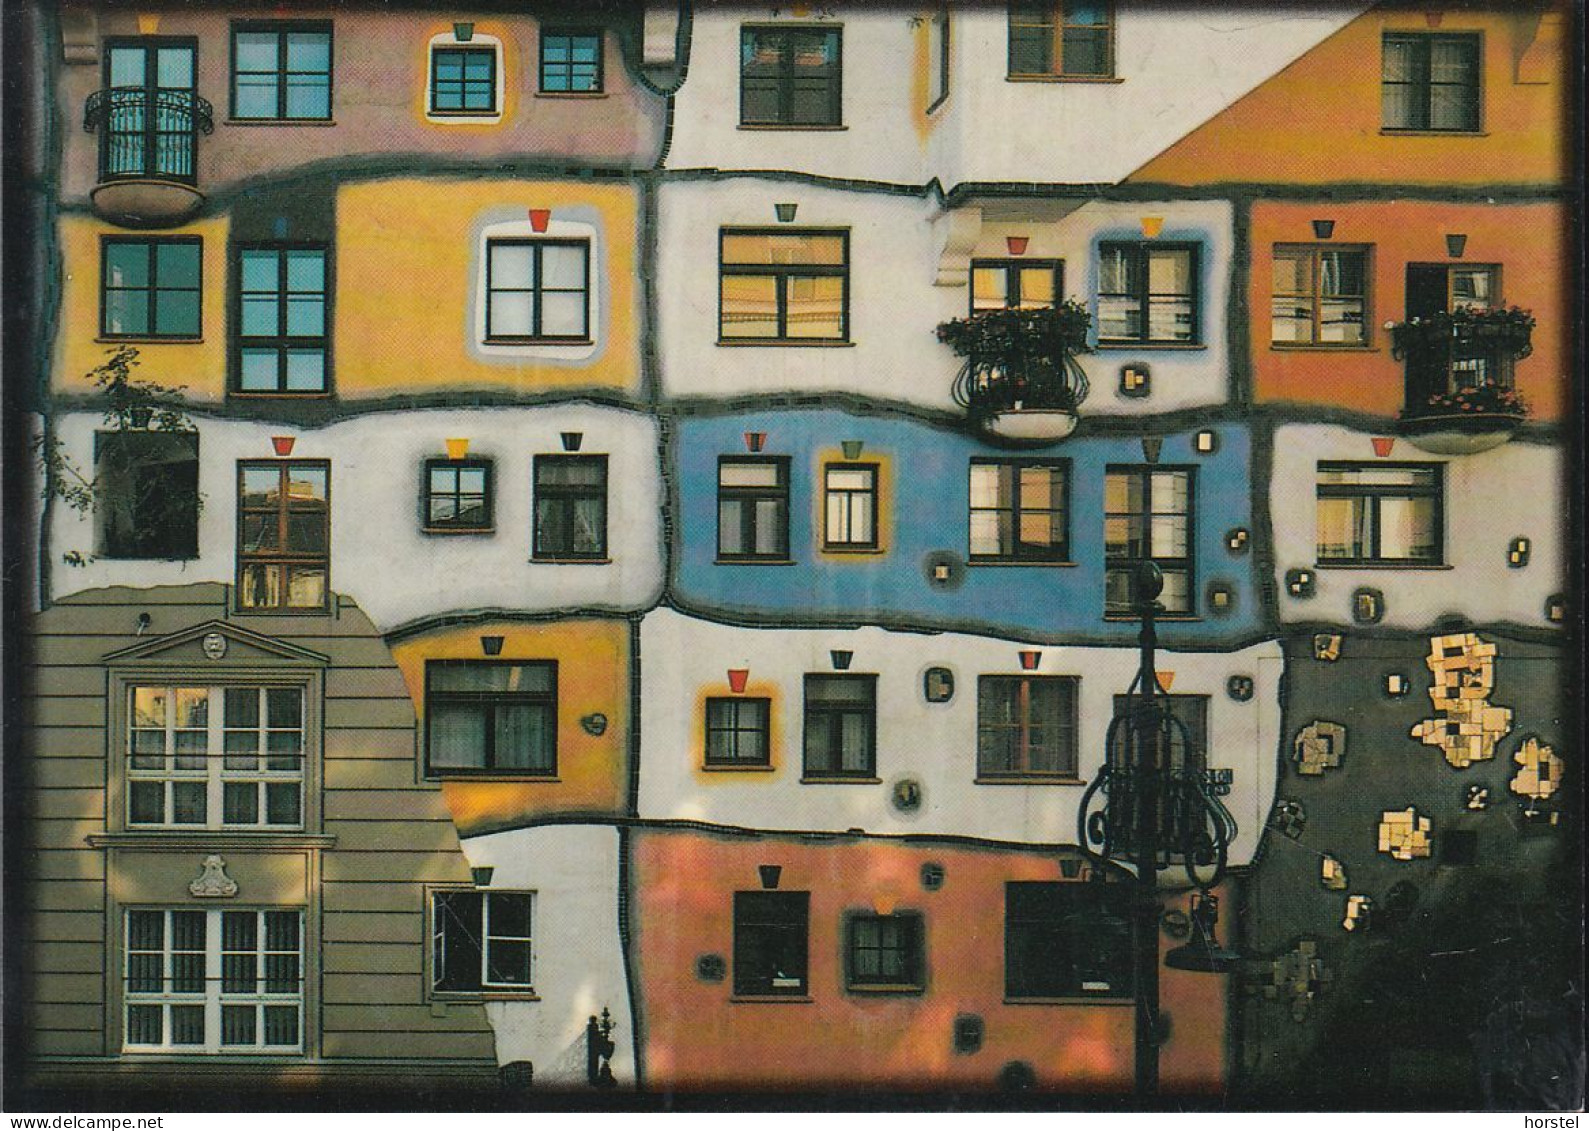 Austria - 1010 Wien - Hundertwasser-Haus In Der Kegelgasse - Wien Mitte